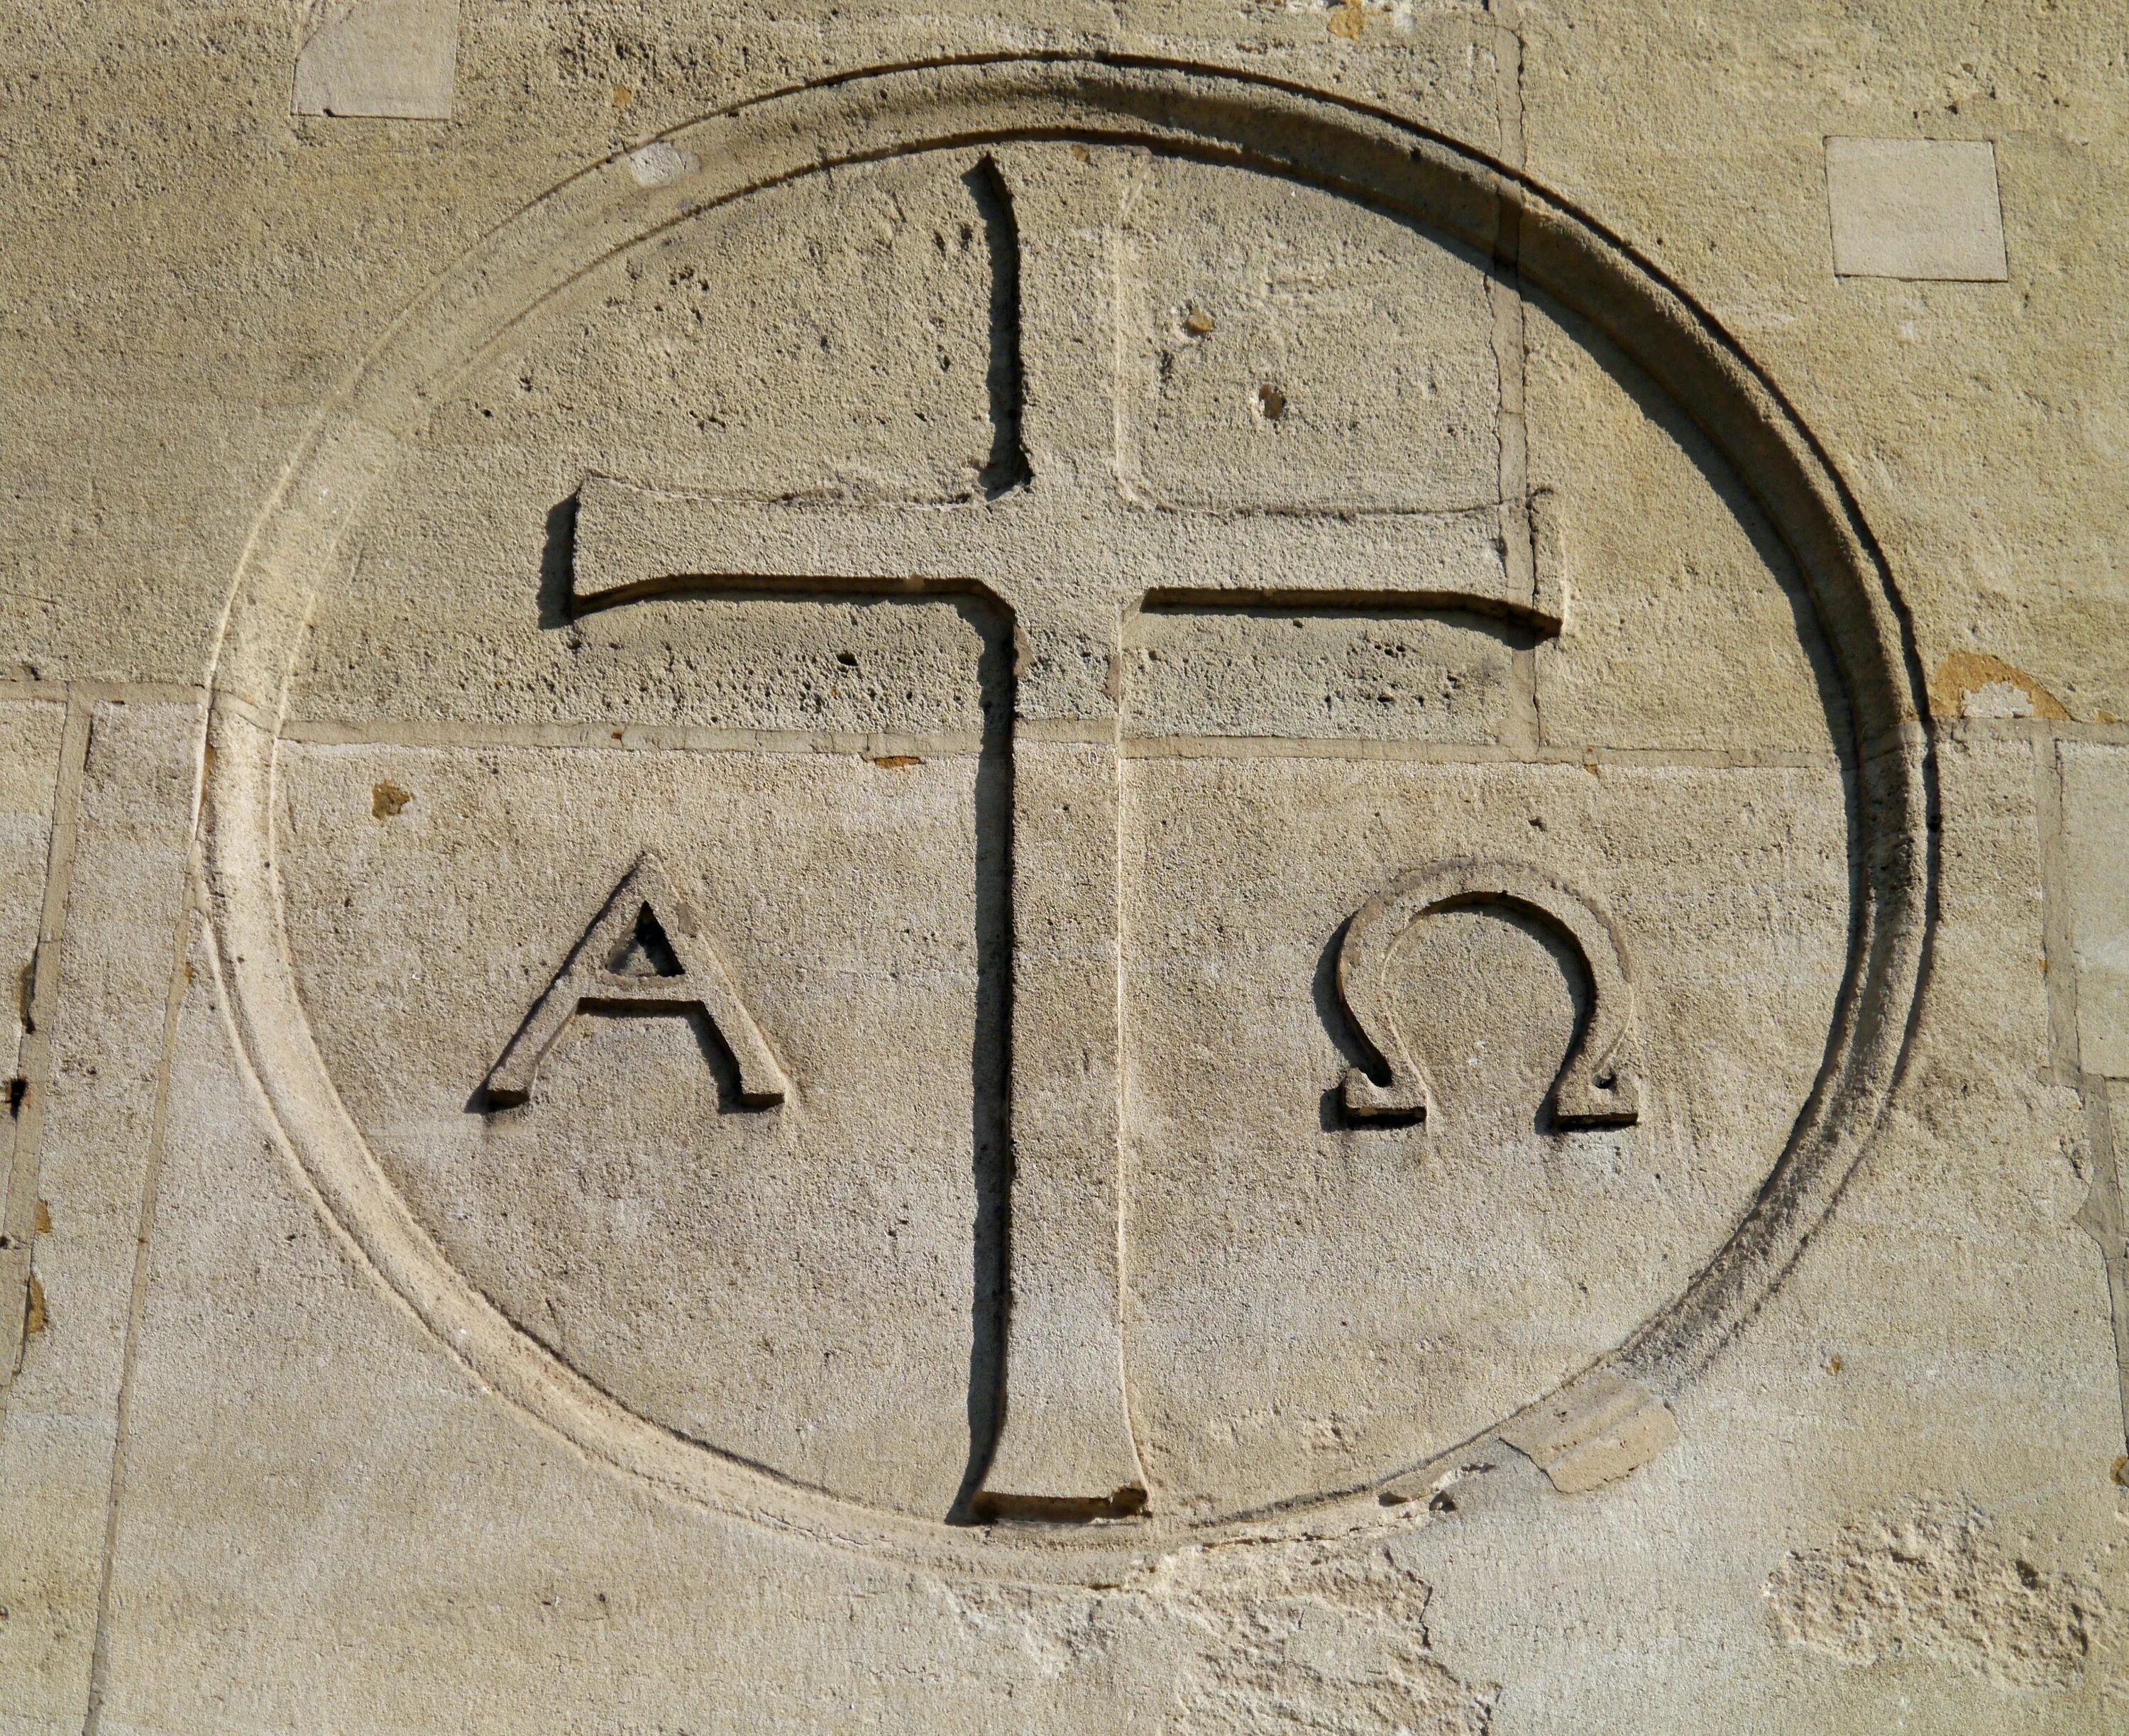 Альфа и омега фразеологизм значение. Я есмь Альфа и Омега. Монограмма Христа Альфа и Омега. Первые христианские символы.